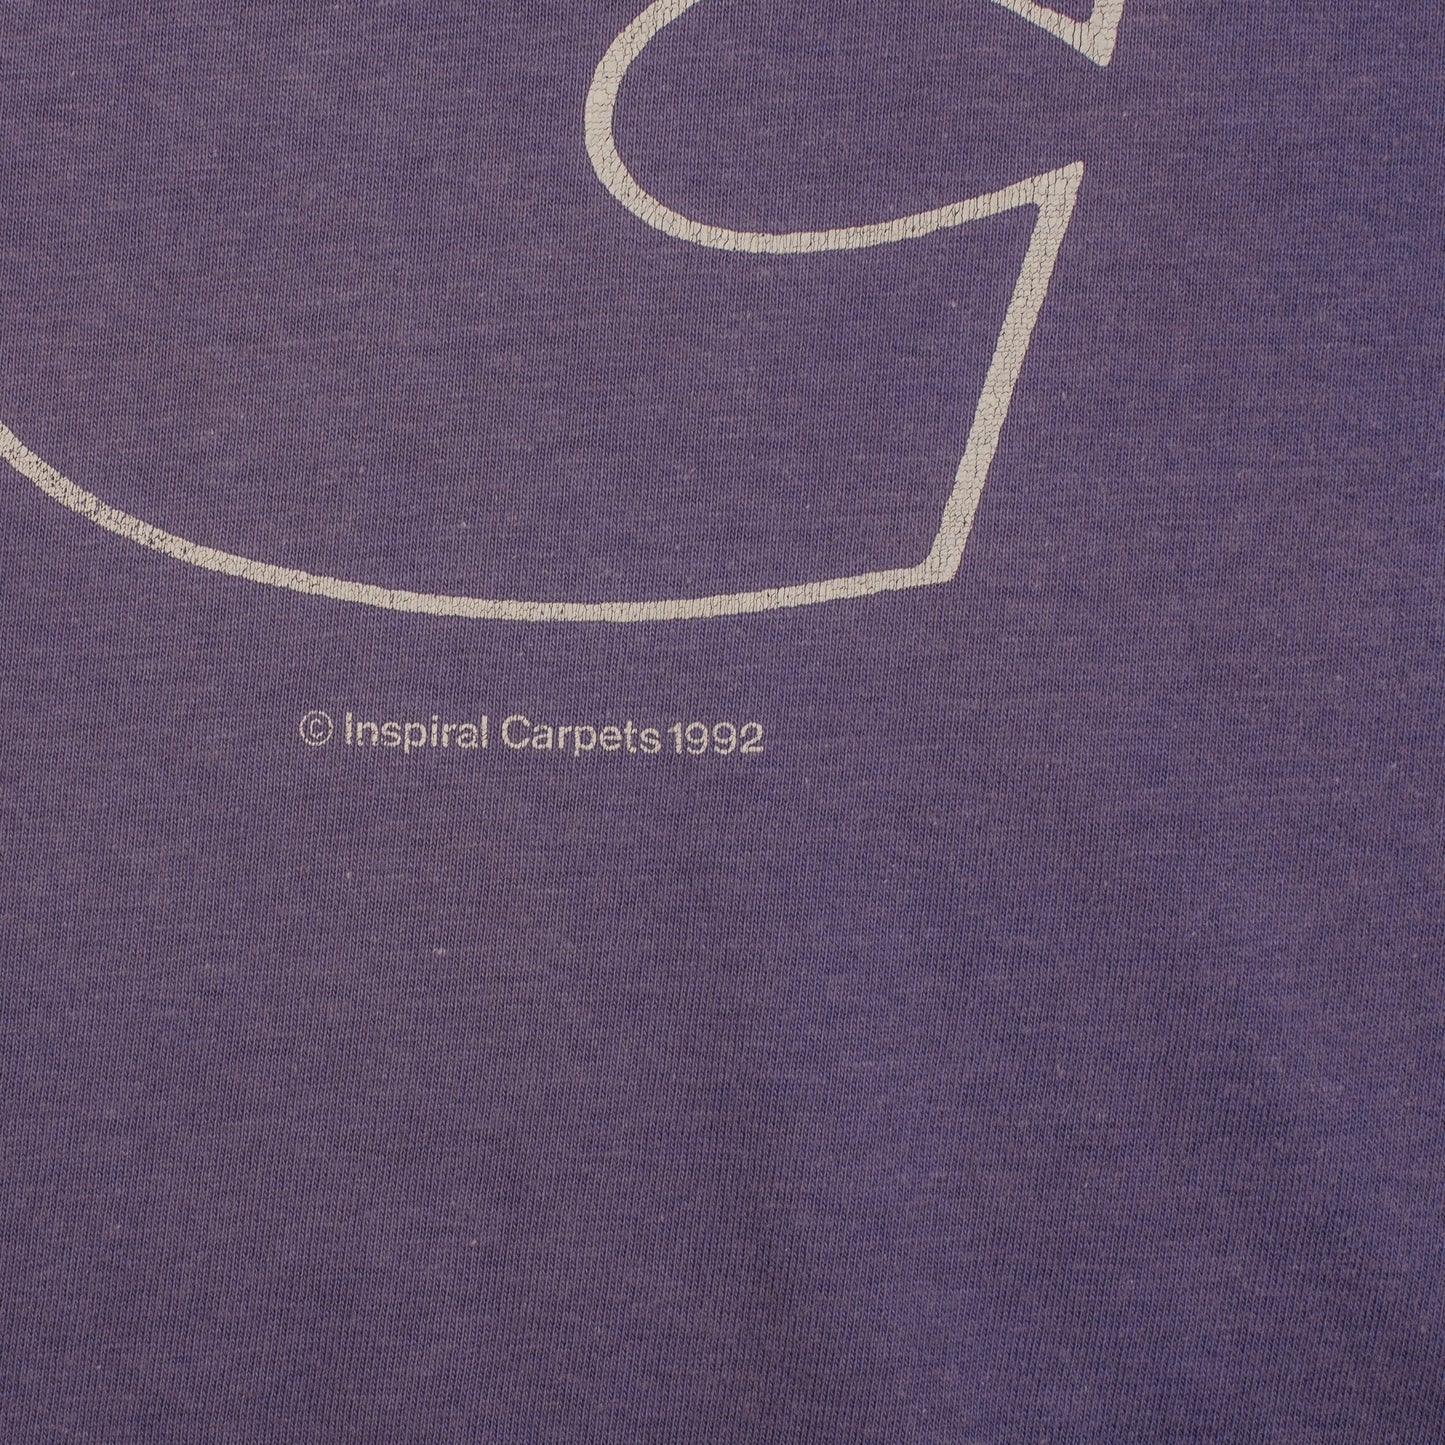 Vintage 1992 Inspiral Carpets T-Shirt